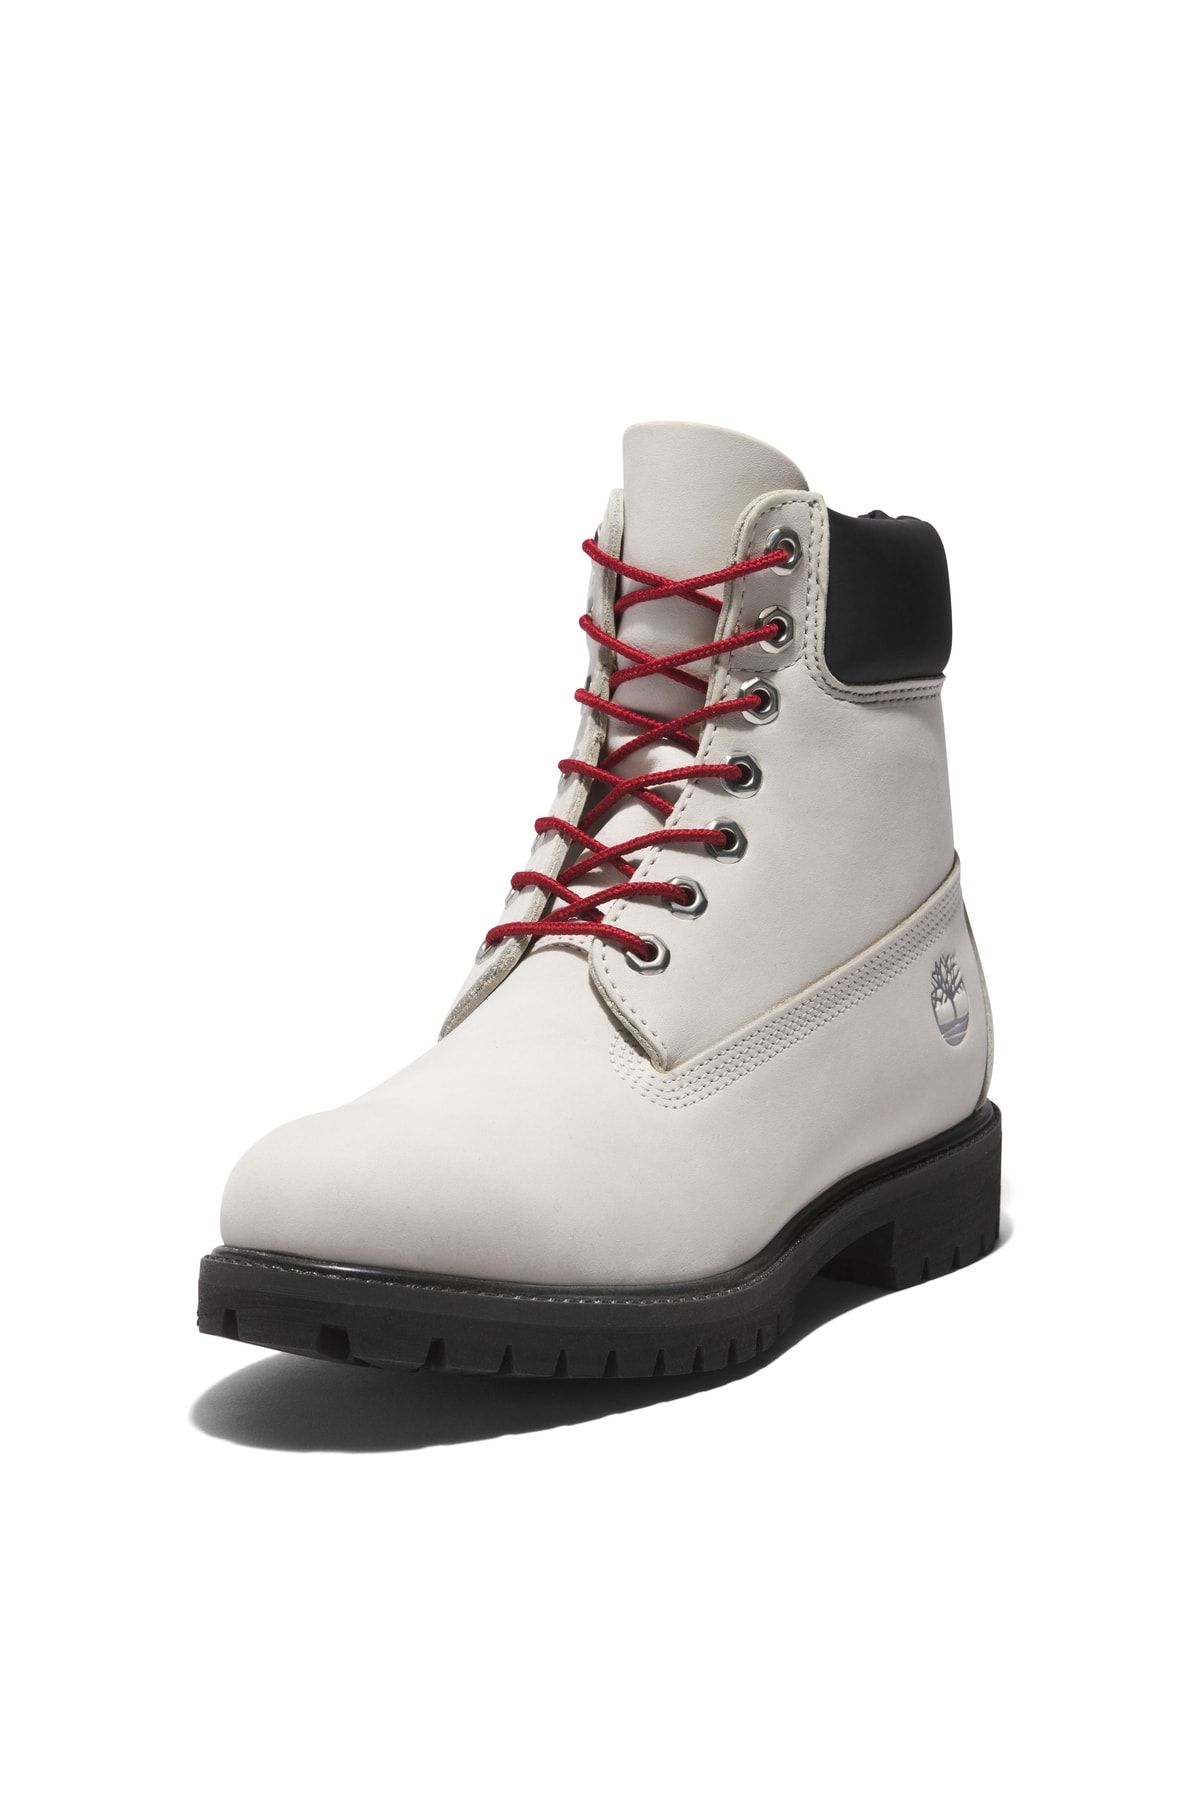 Timberland 6 Inch Premium Boot Erkek Beyaz Outdoor Ayakkabı Tb0a5s4g1431